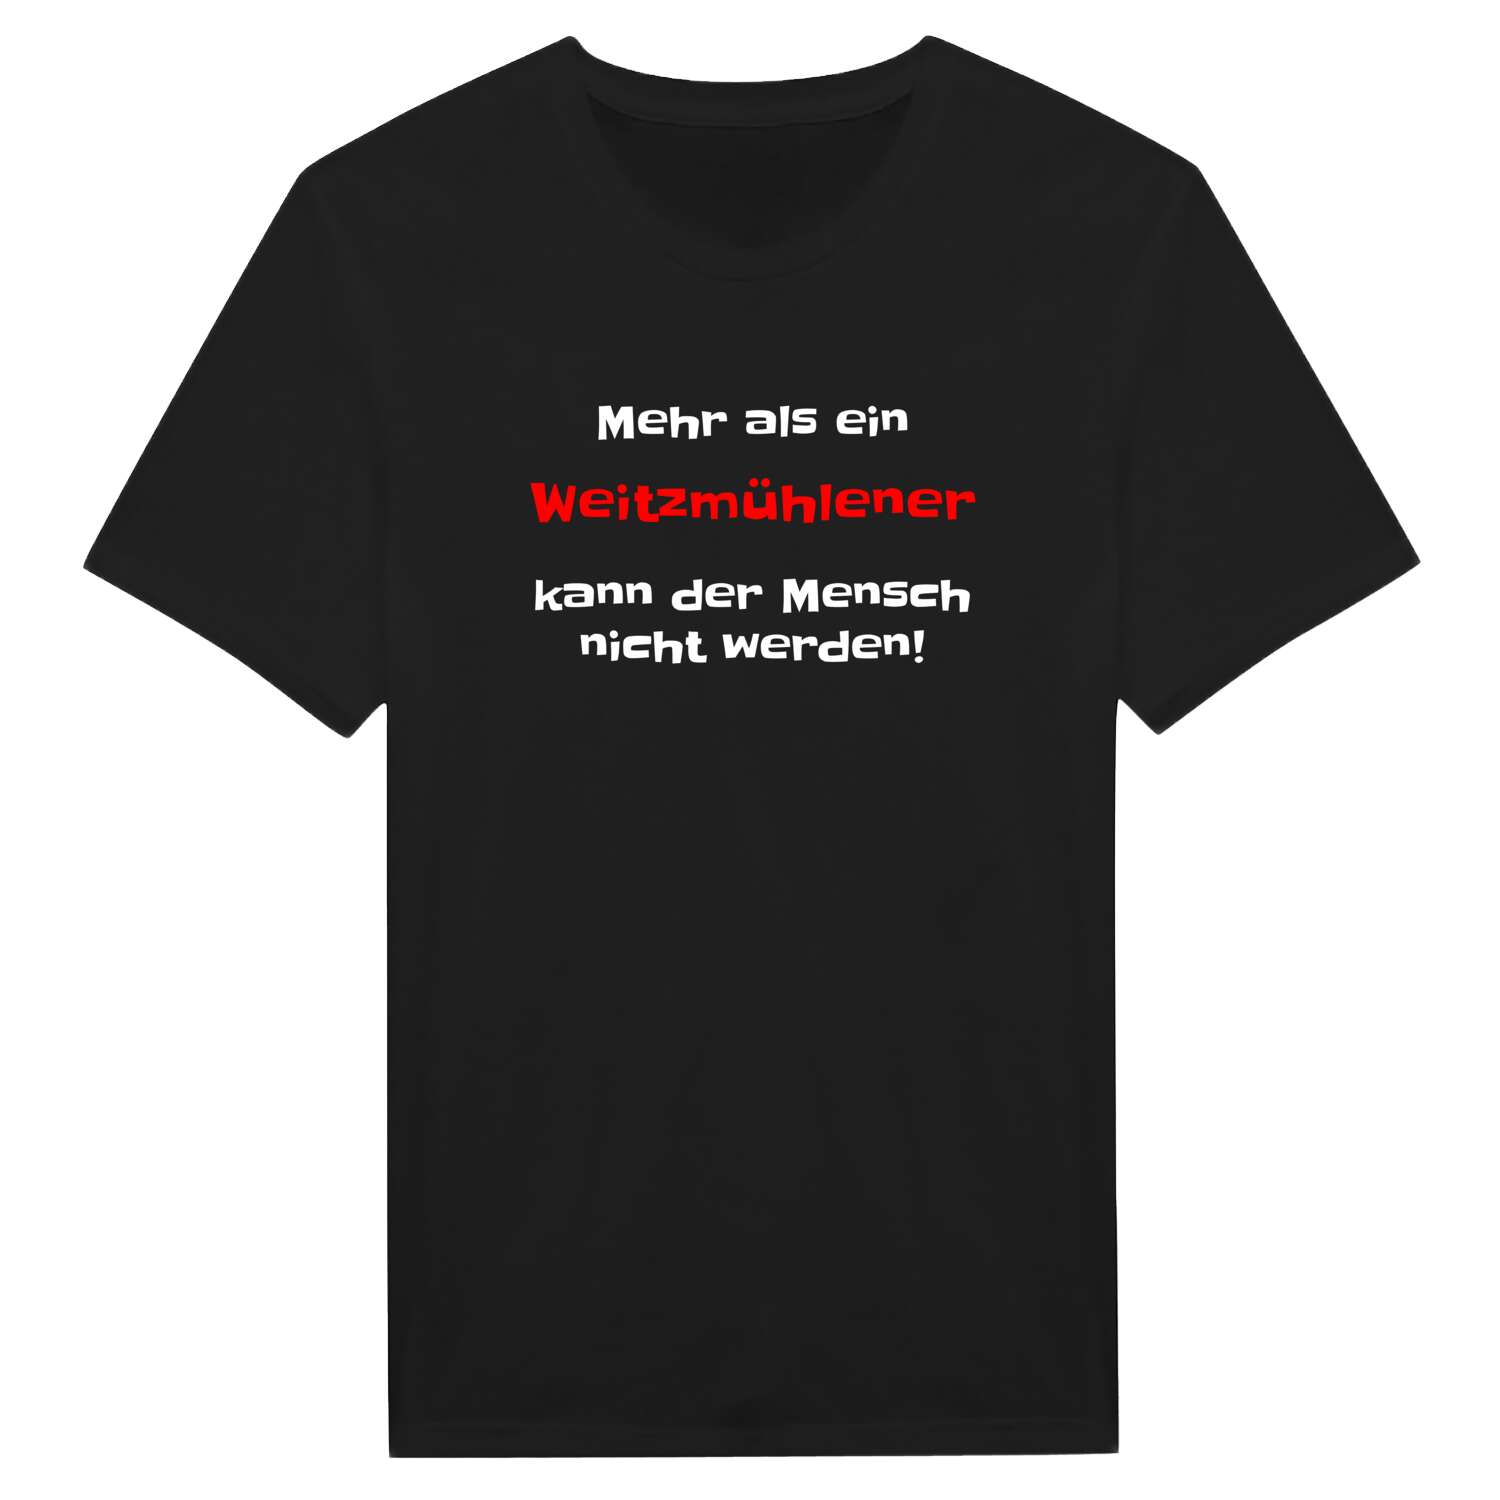 Weitzmühlen T-Shirt »Mehr als ein«